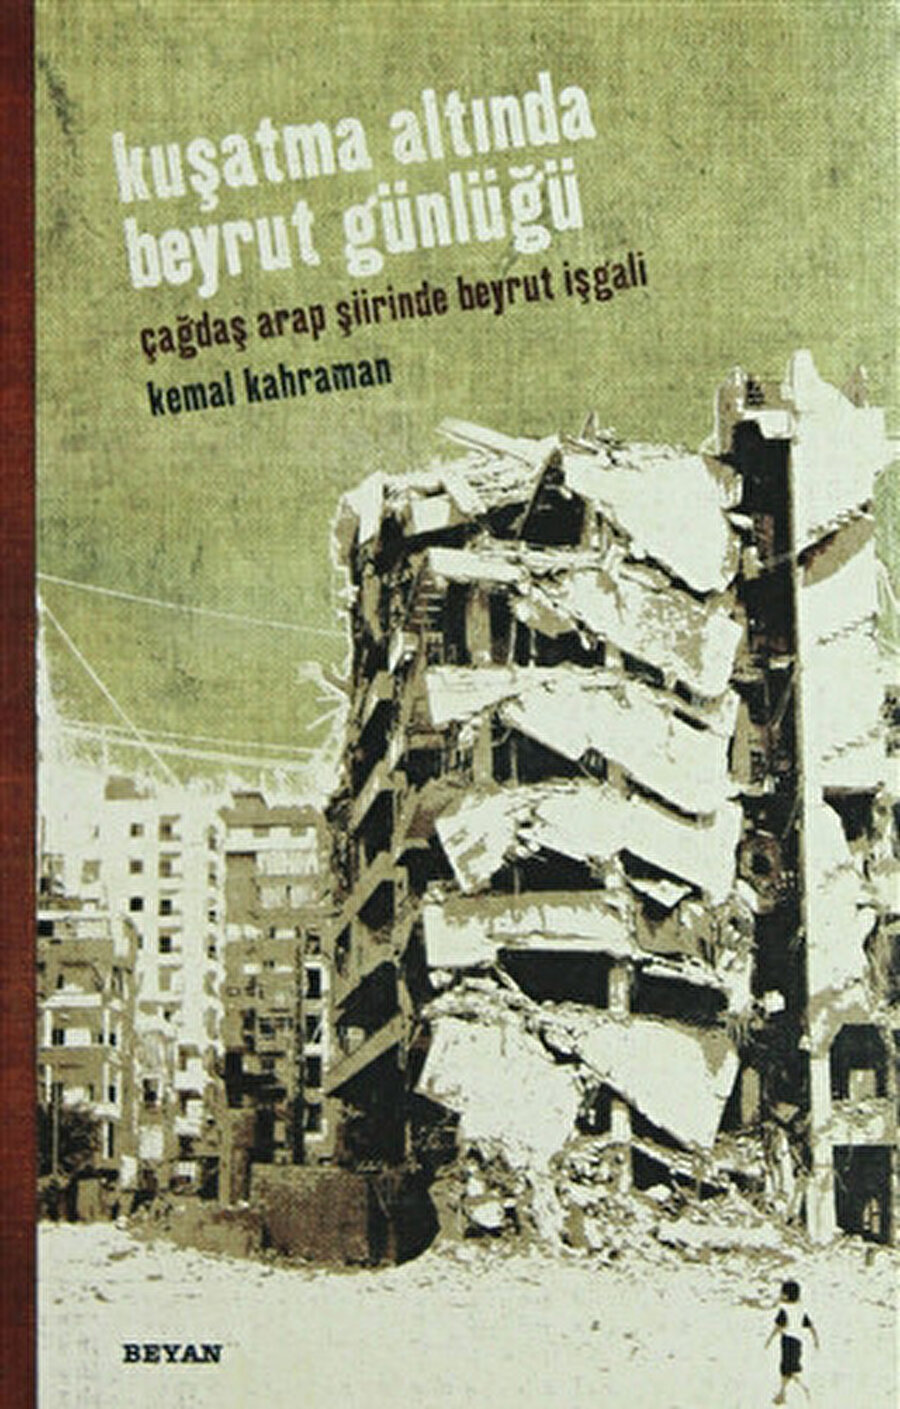 Kemal Kahraman, Kuşatma Altında Beyrut Günlüğü